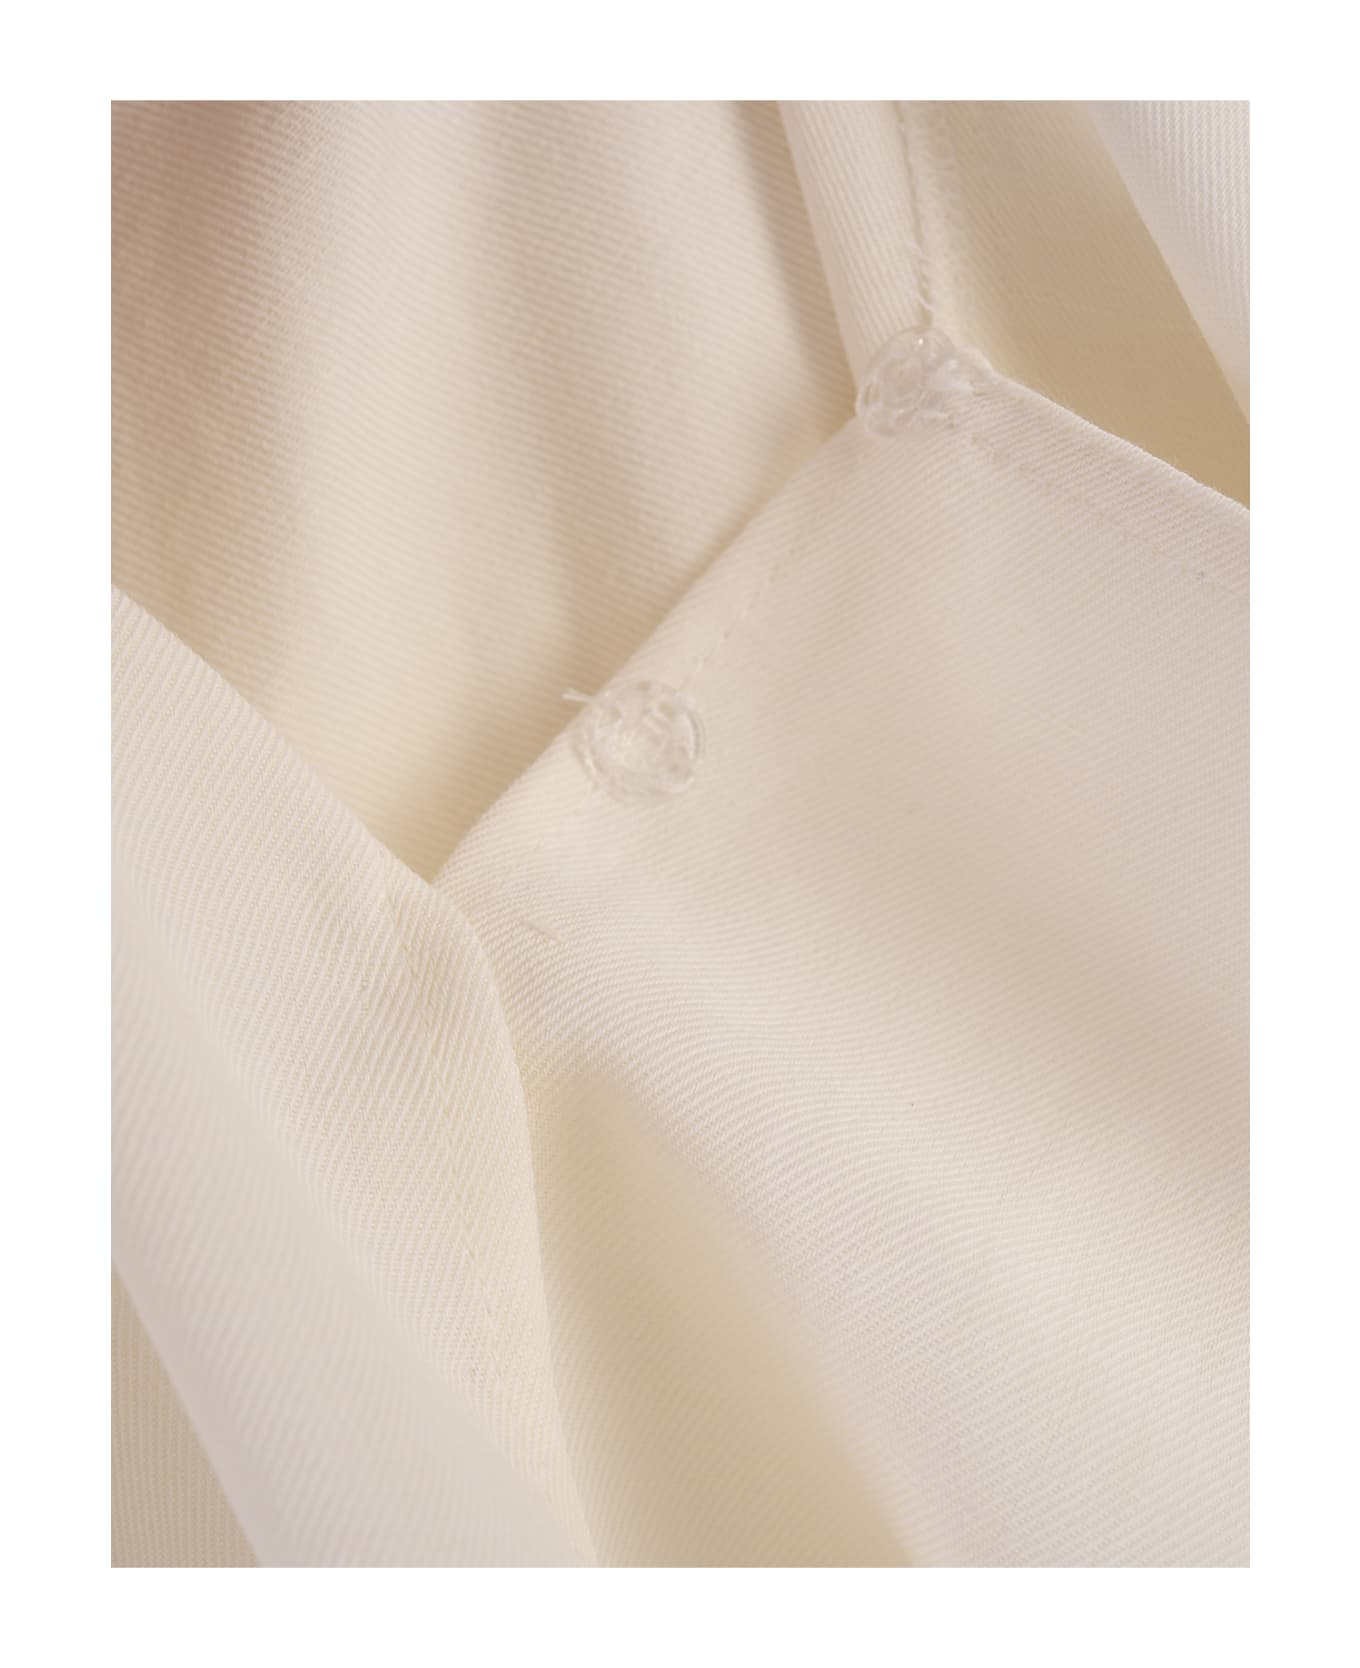 Fabiana Filippi White Linen And Viscose Dress - White